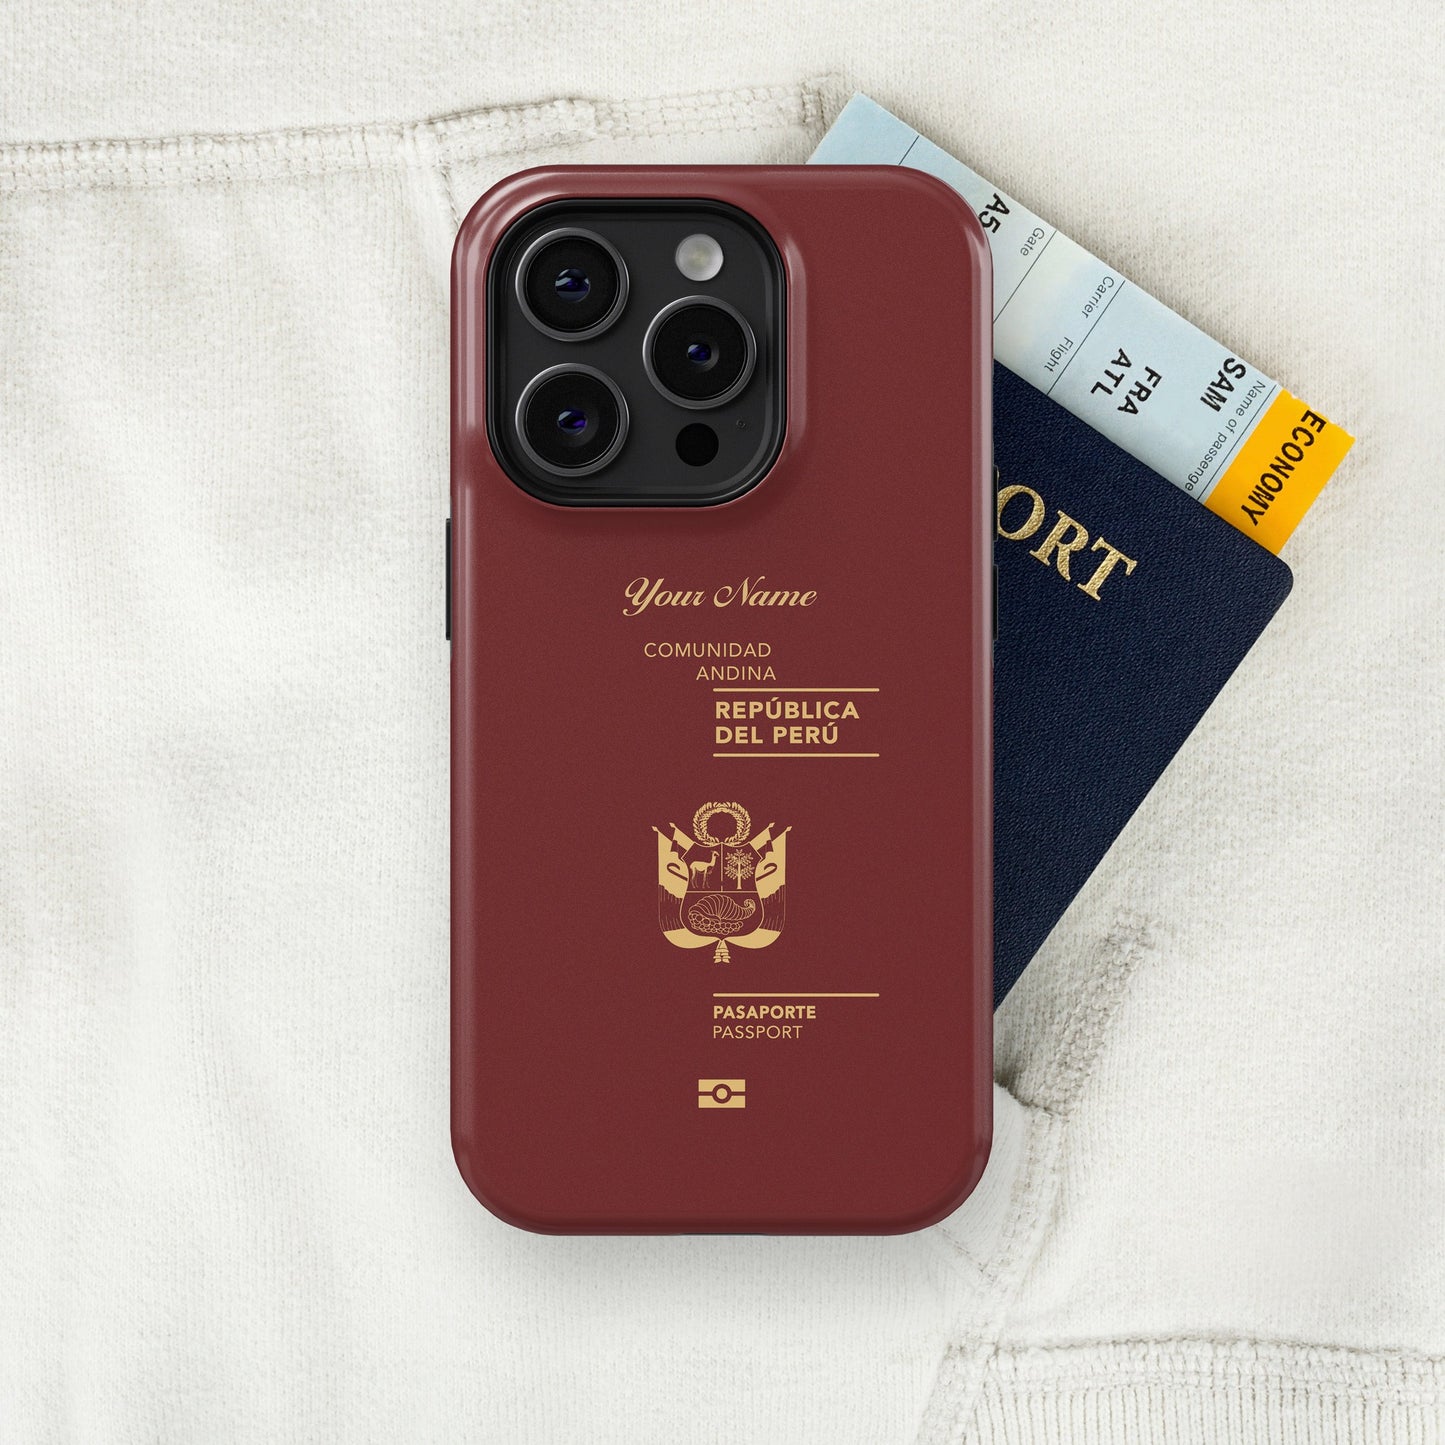 Peru Passport - iPhone Case Tough Case